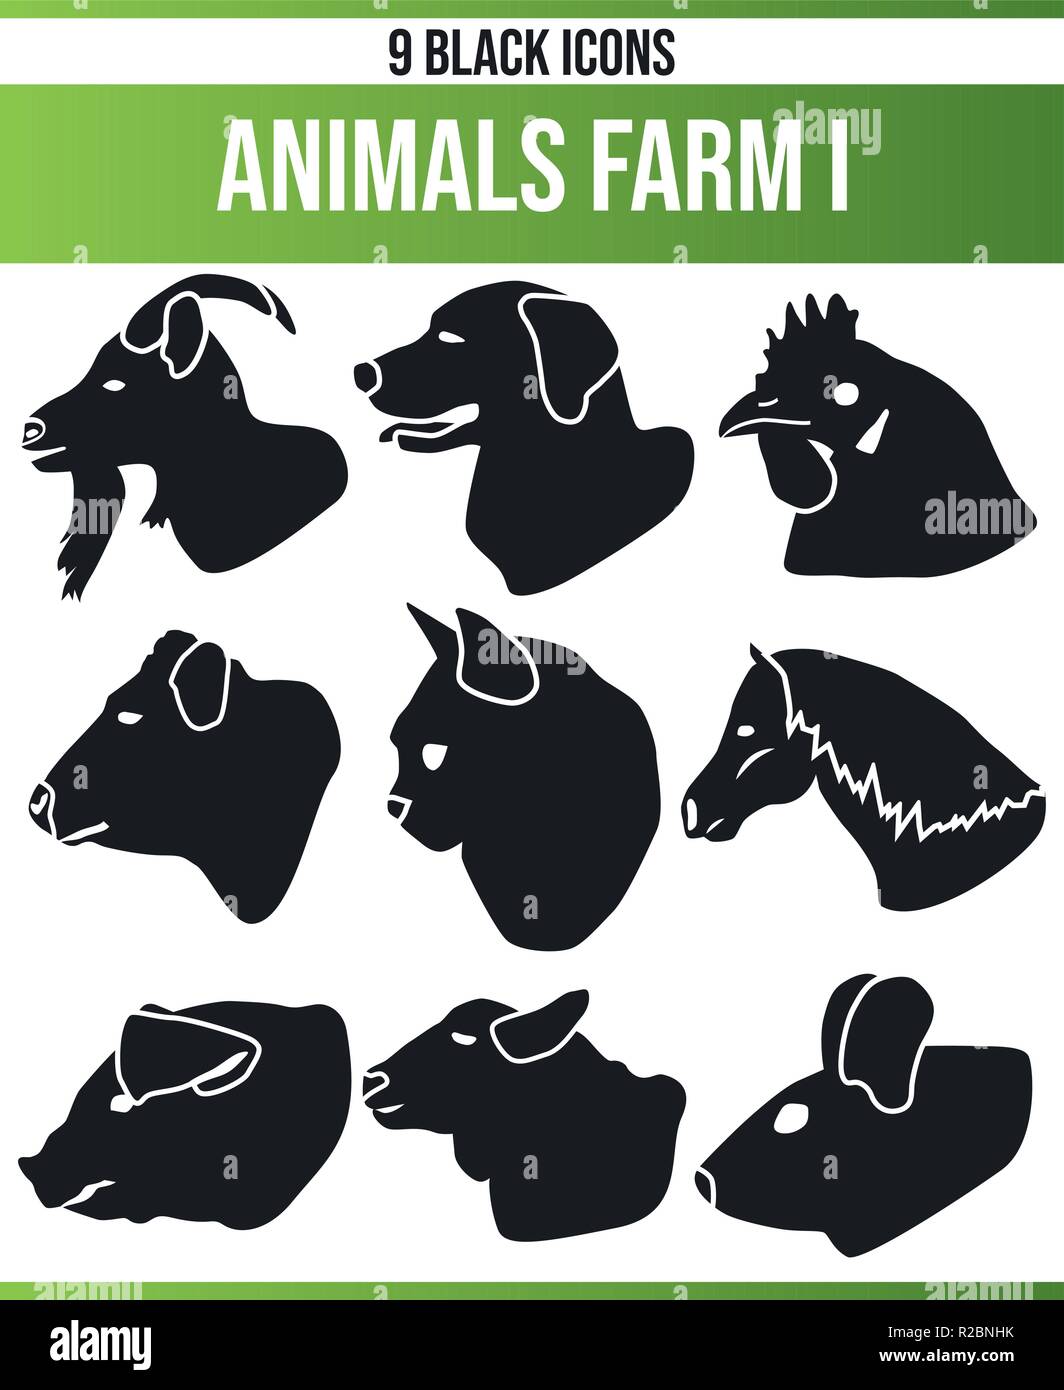 Schwarz Piktoramme/Icons auf Nutztiere. Dieses Icon Set ist perfekt für kreative Menschen und Designer, die das Thema der Bauernhof Tiere in Ihrem Diagramm benötigen Stock Vektor